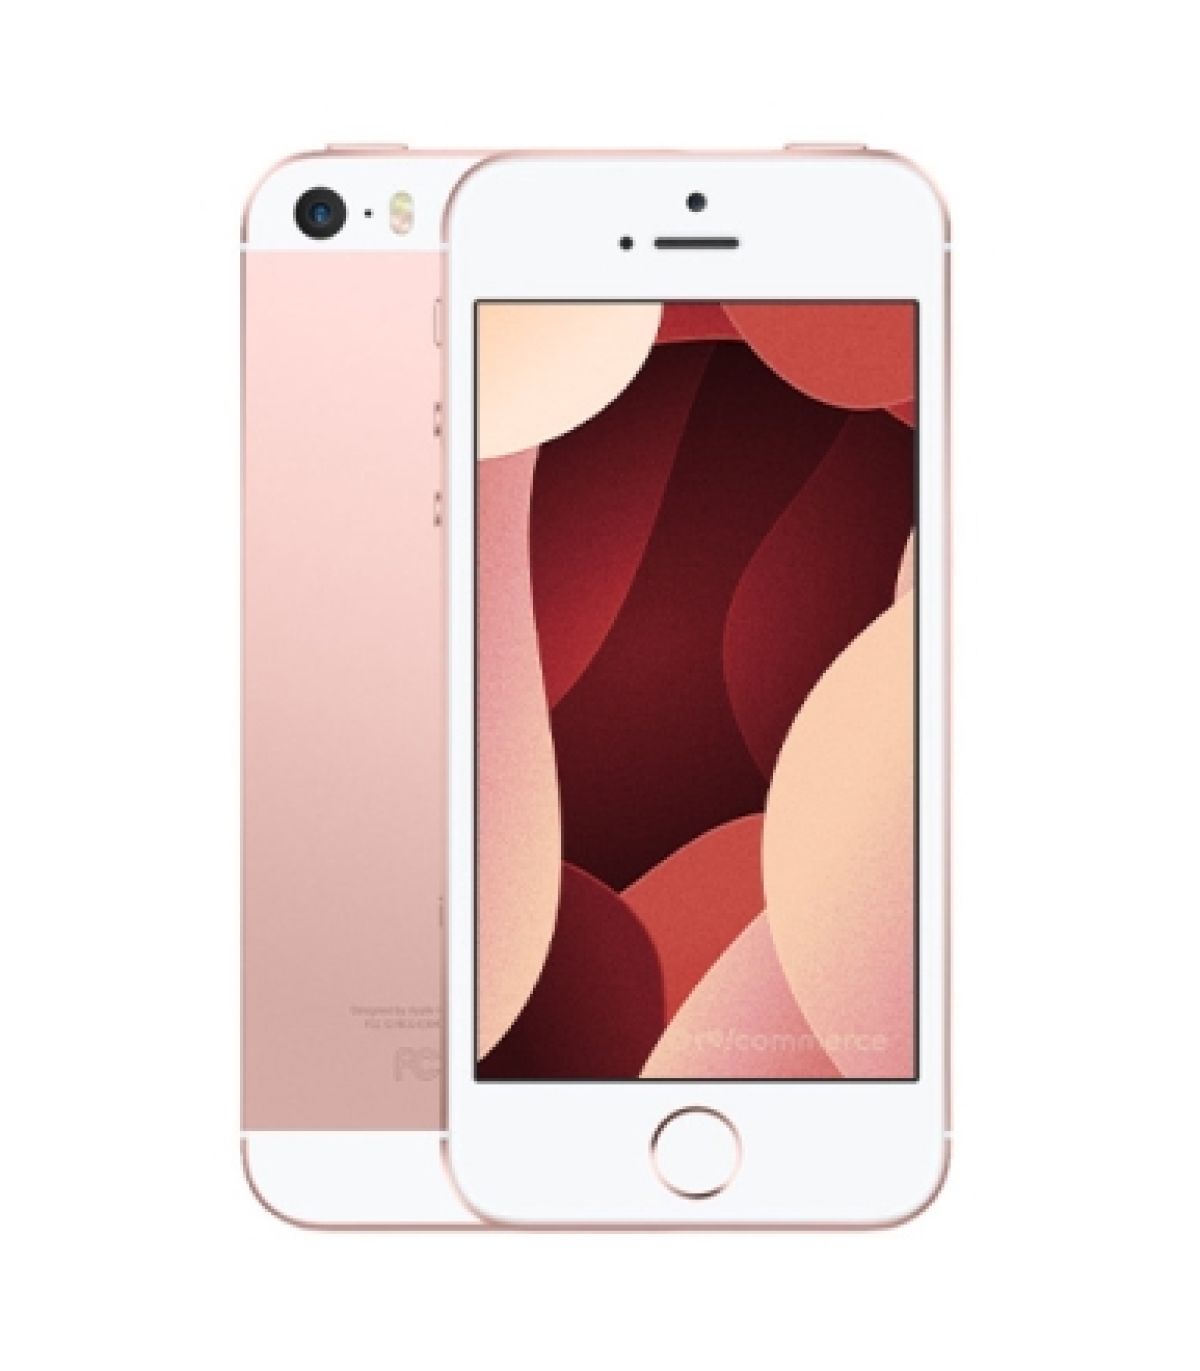 Apple iPhone SE (1re génération) 64 Go Or rose Débloqué